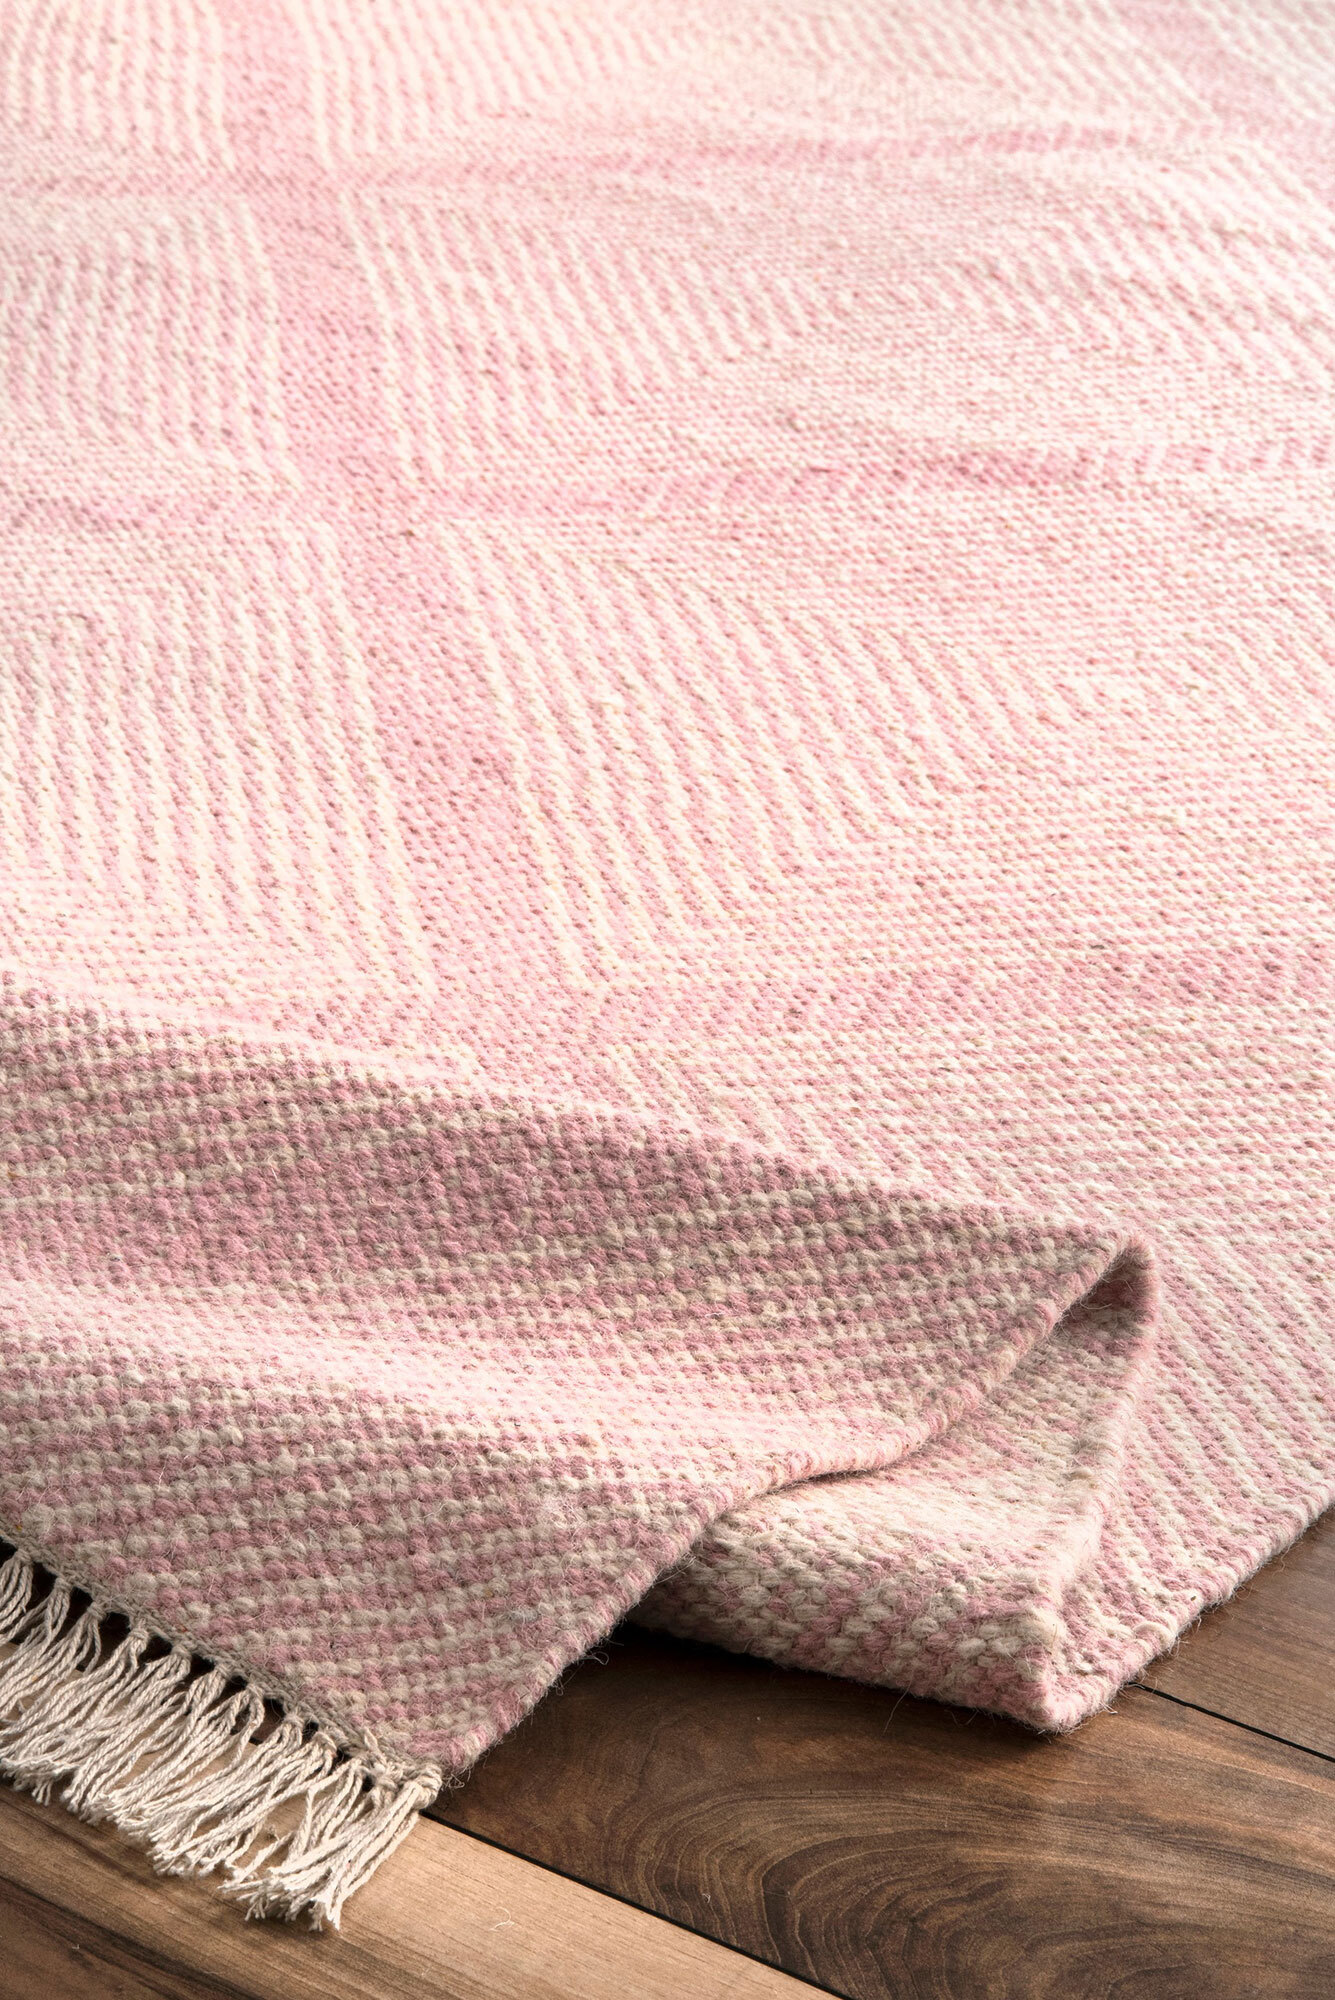 Dhurrie Pink Diamond Pattern Rug